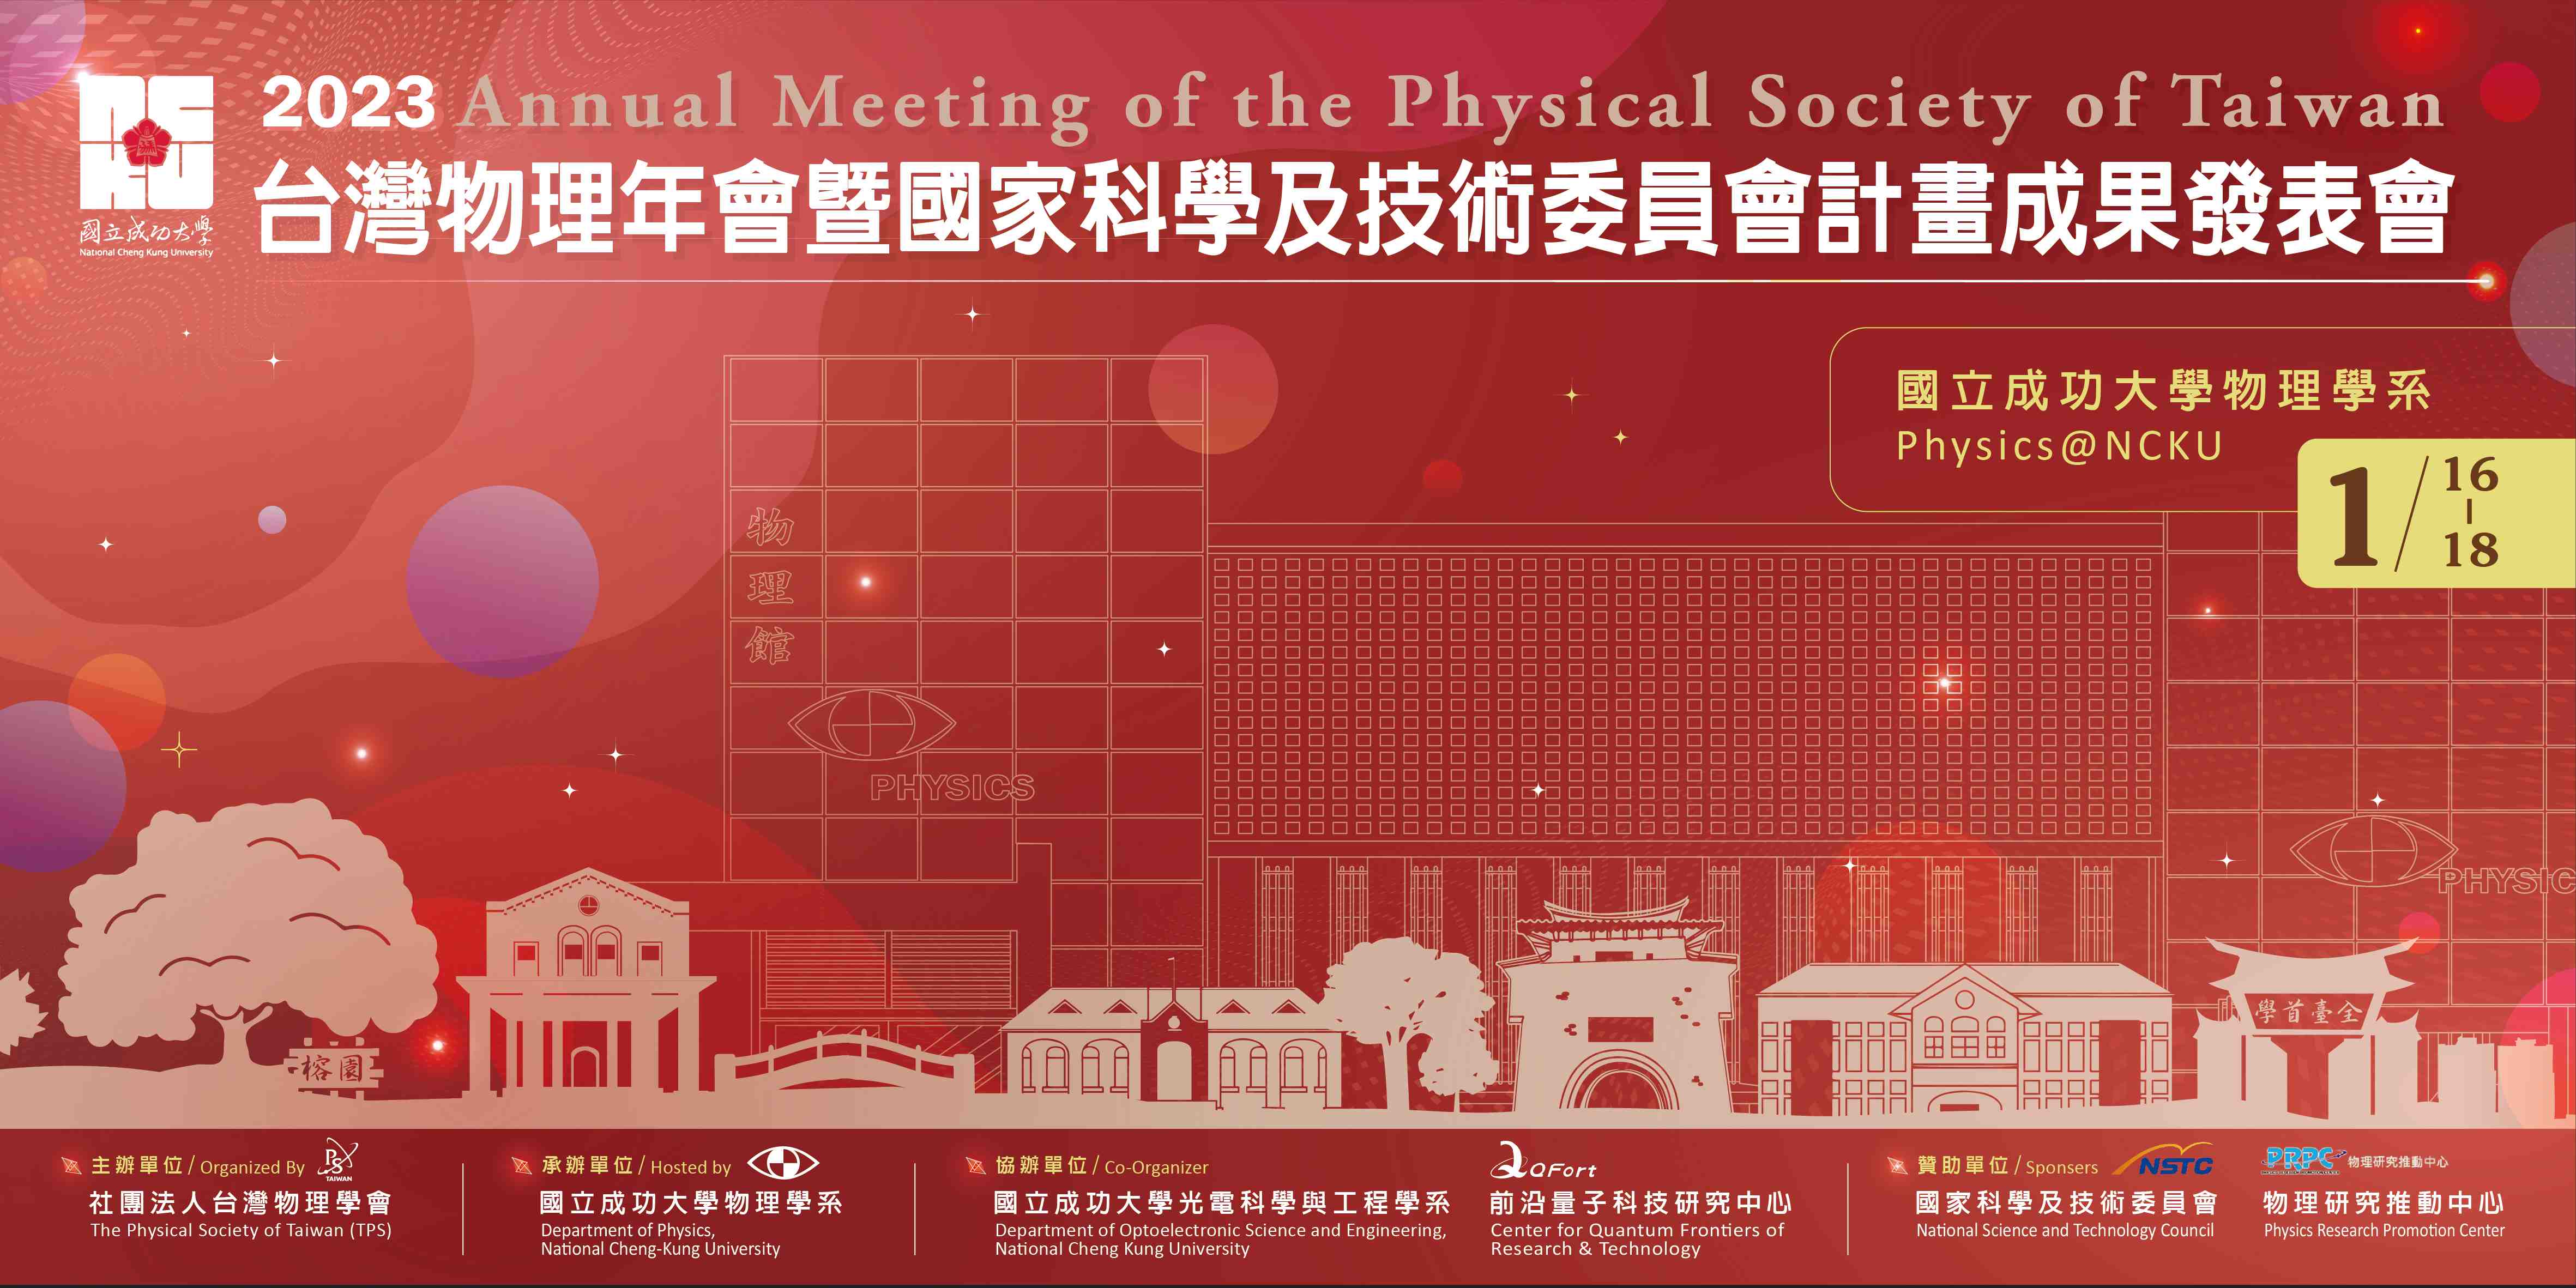 2023台灣物理年會暨國科會計畫成果發表會宣傳用圖片/海報